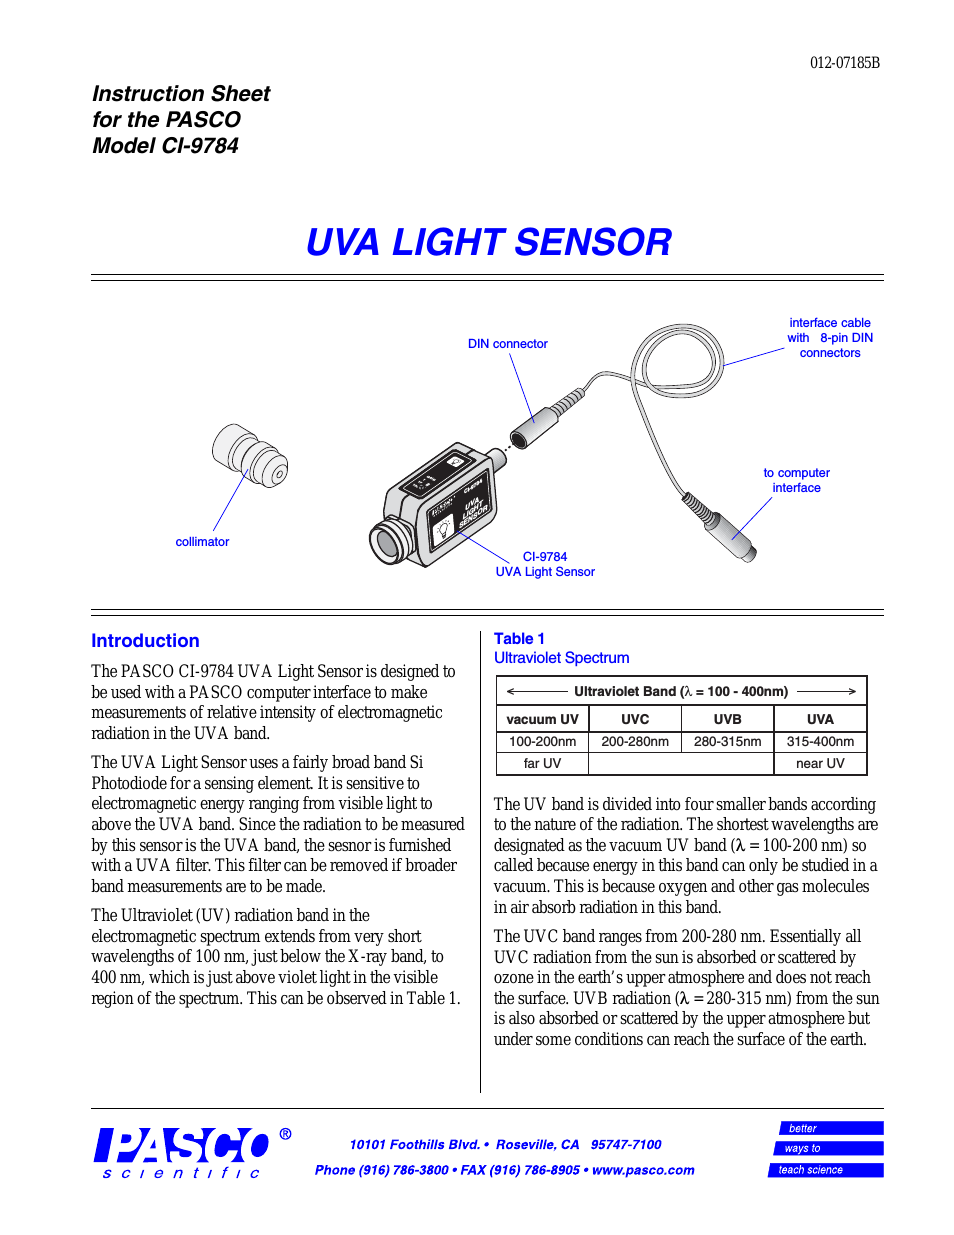 CI-9784 UVA LIGHT SENSOR